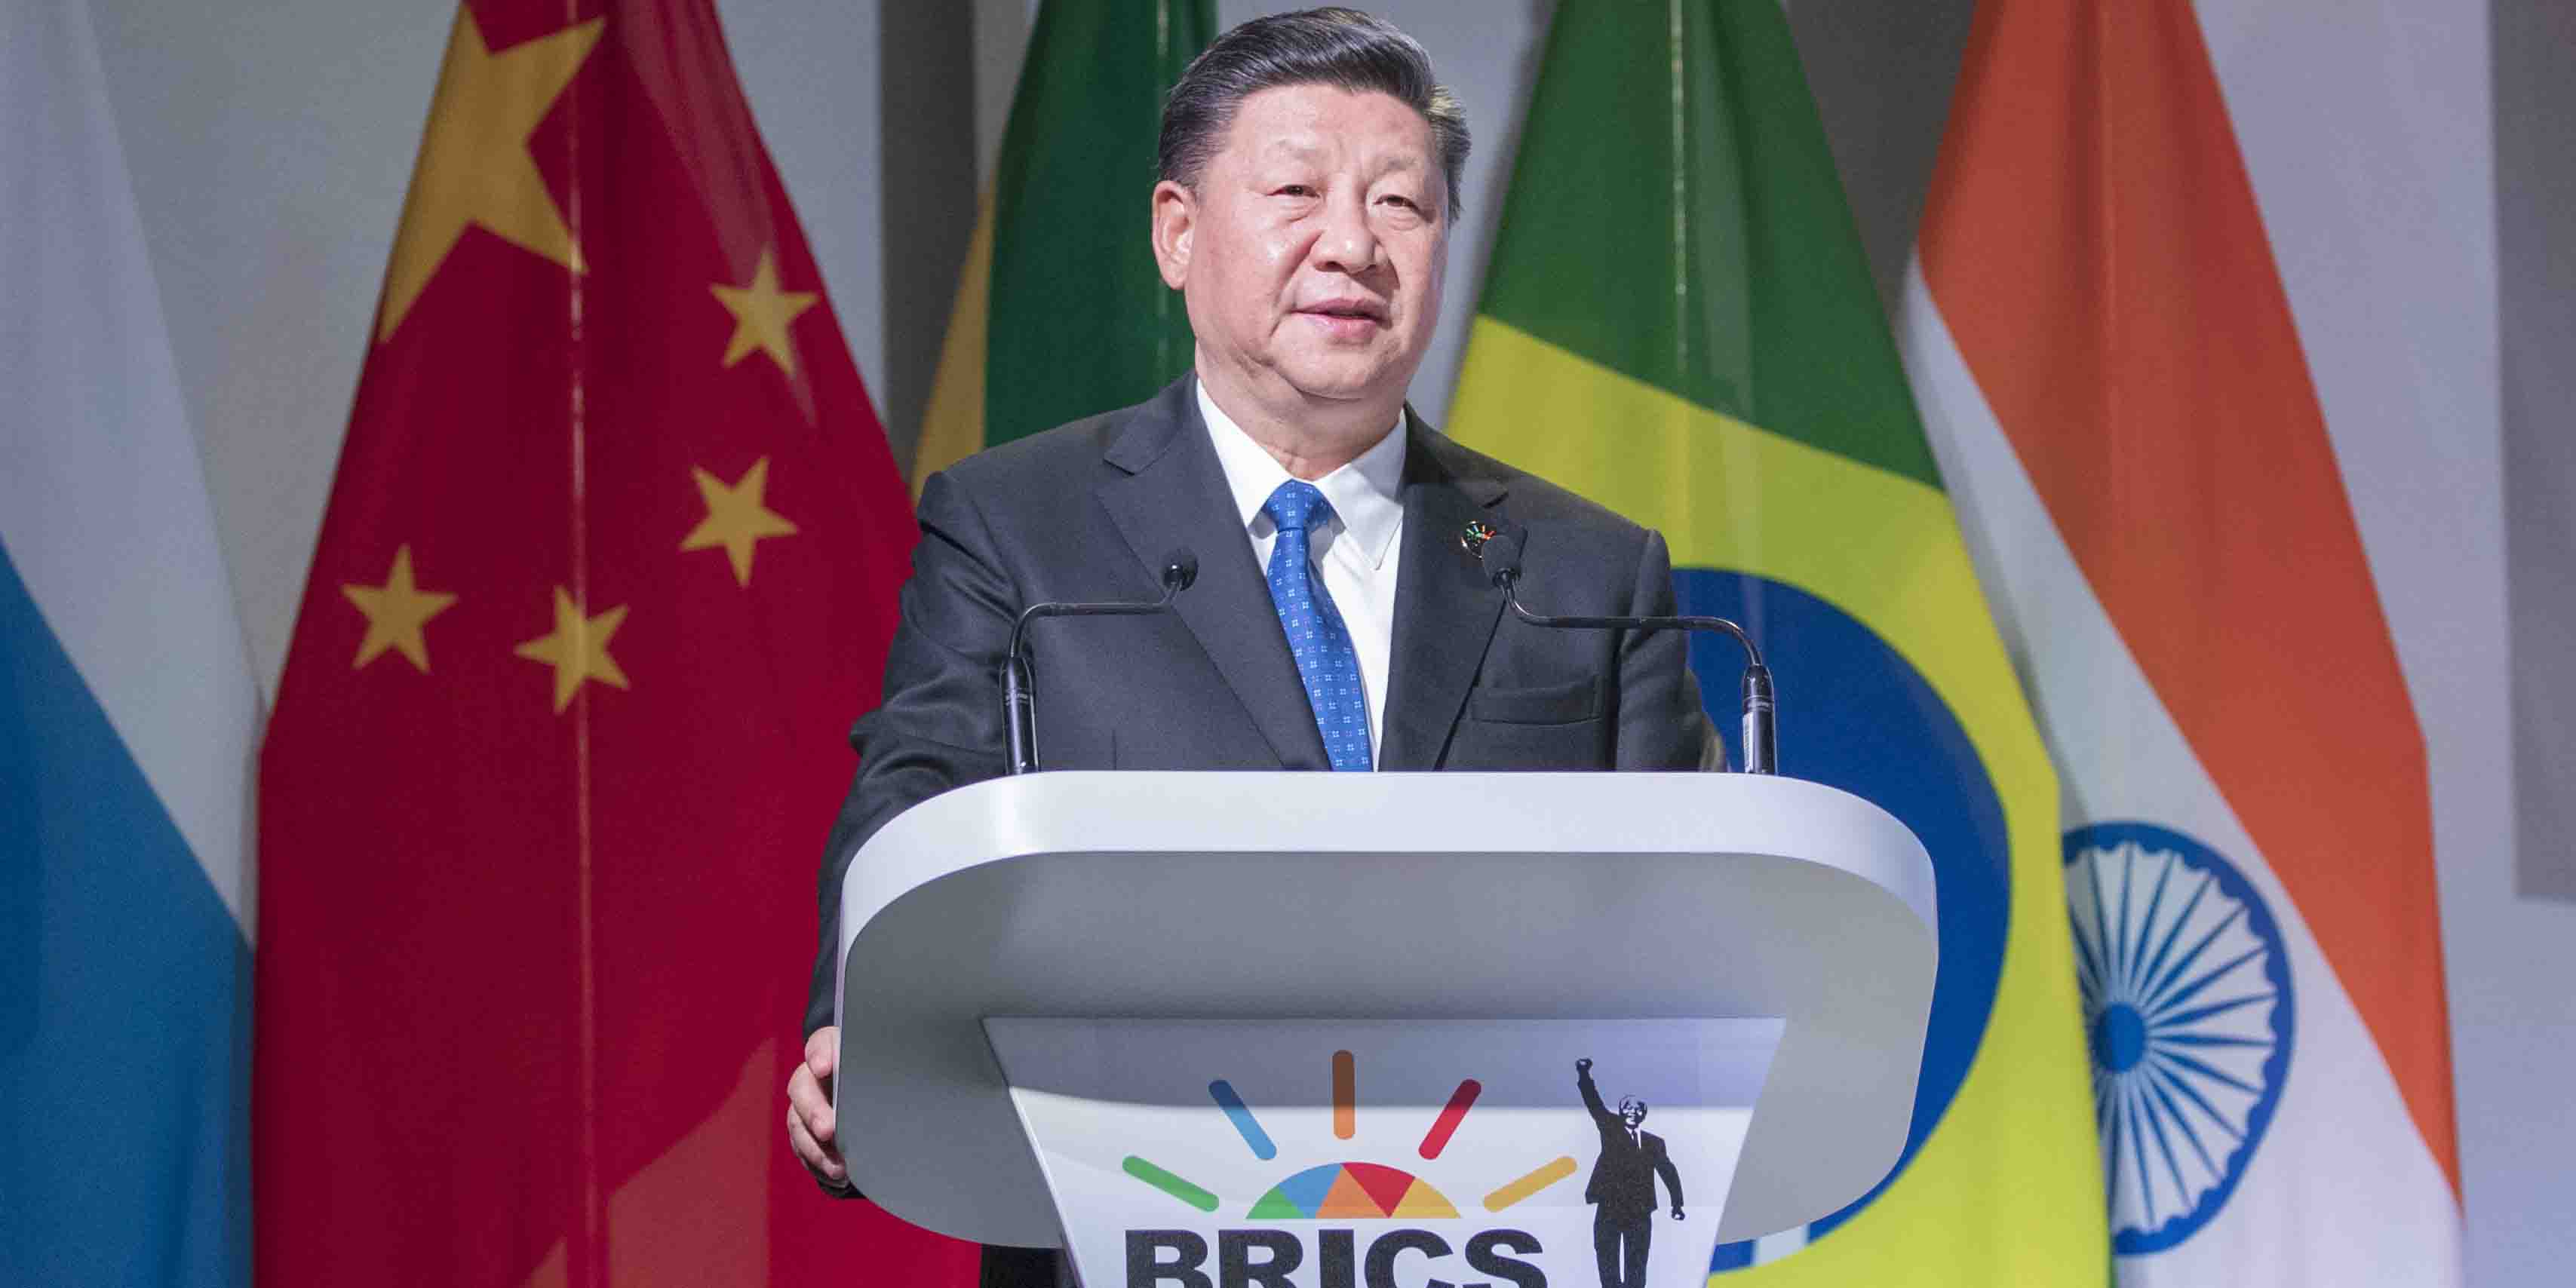 Xi diz que China apoia firmemente o livre comércio e que abre seu mercado através de novas plataformas